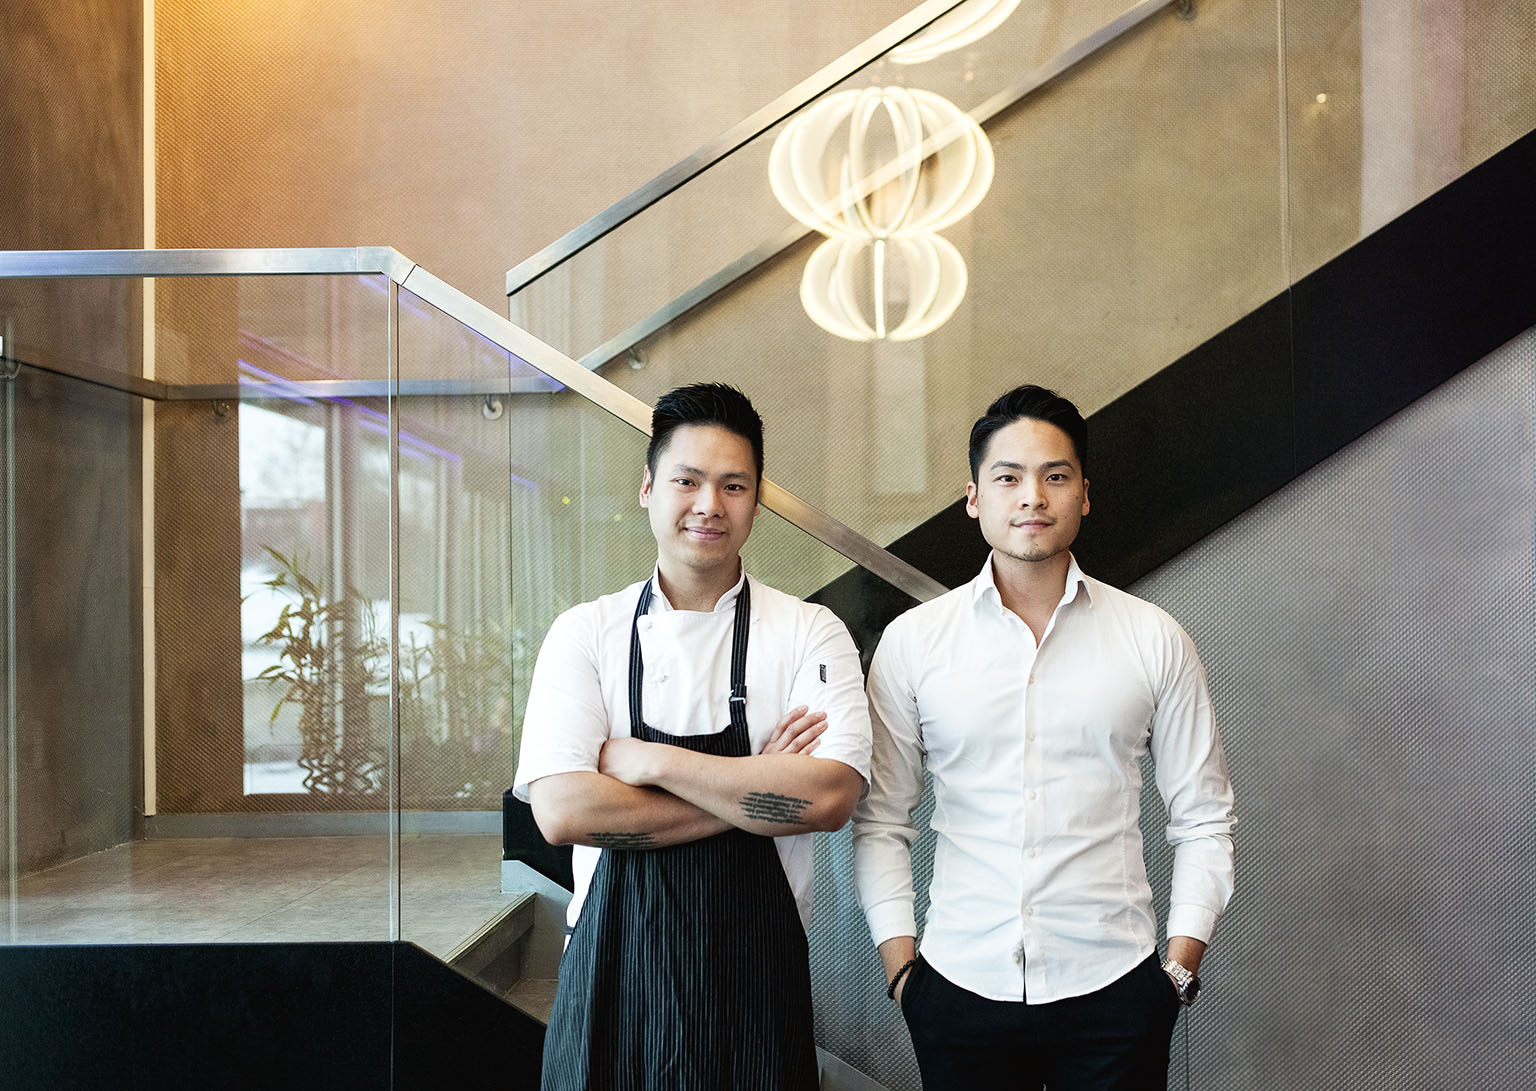 Giang Ta (vpravo) je manažer restaurace, který dbá na provoz. Khanh Ta pracuje jako šéfkuchař. Tetované nápisy na jeho loktech nesouvisí s jídlem, ale s jeho jiným koníčkem – thajským boxem.